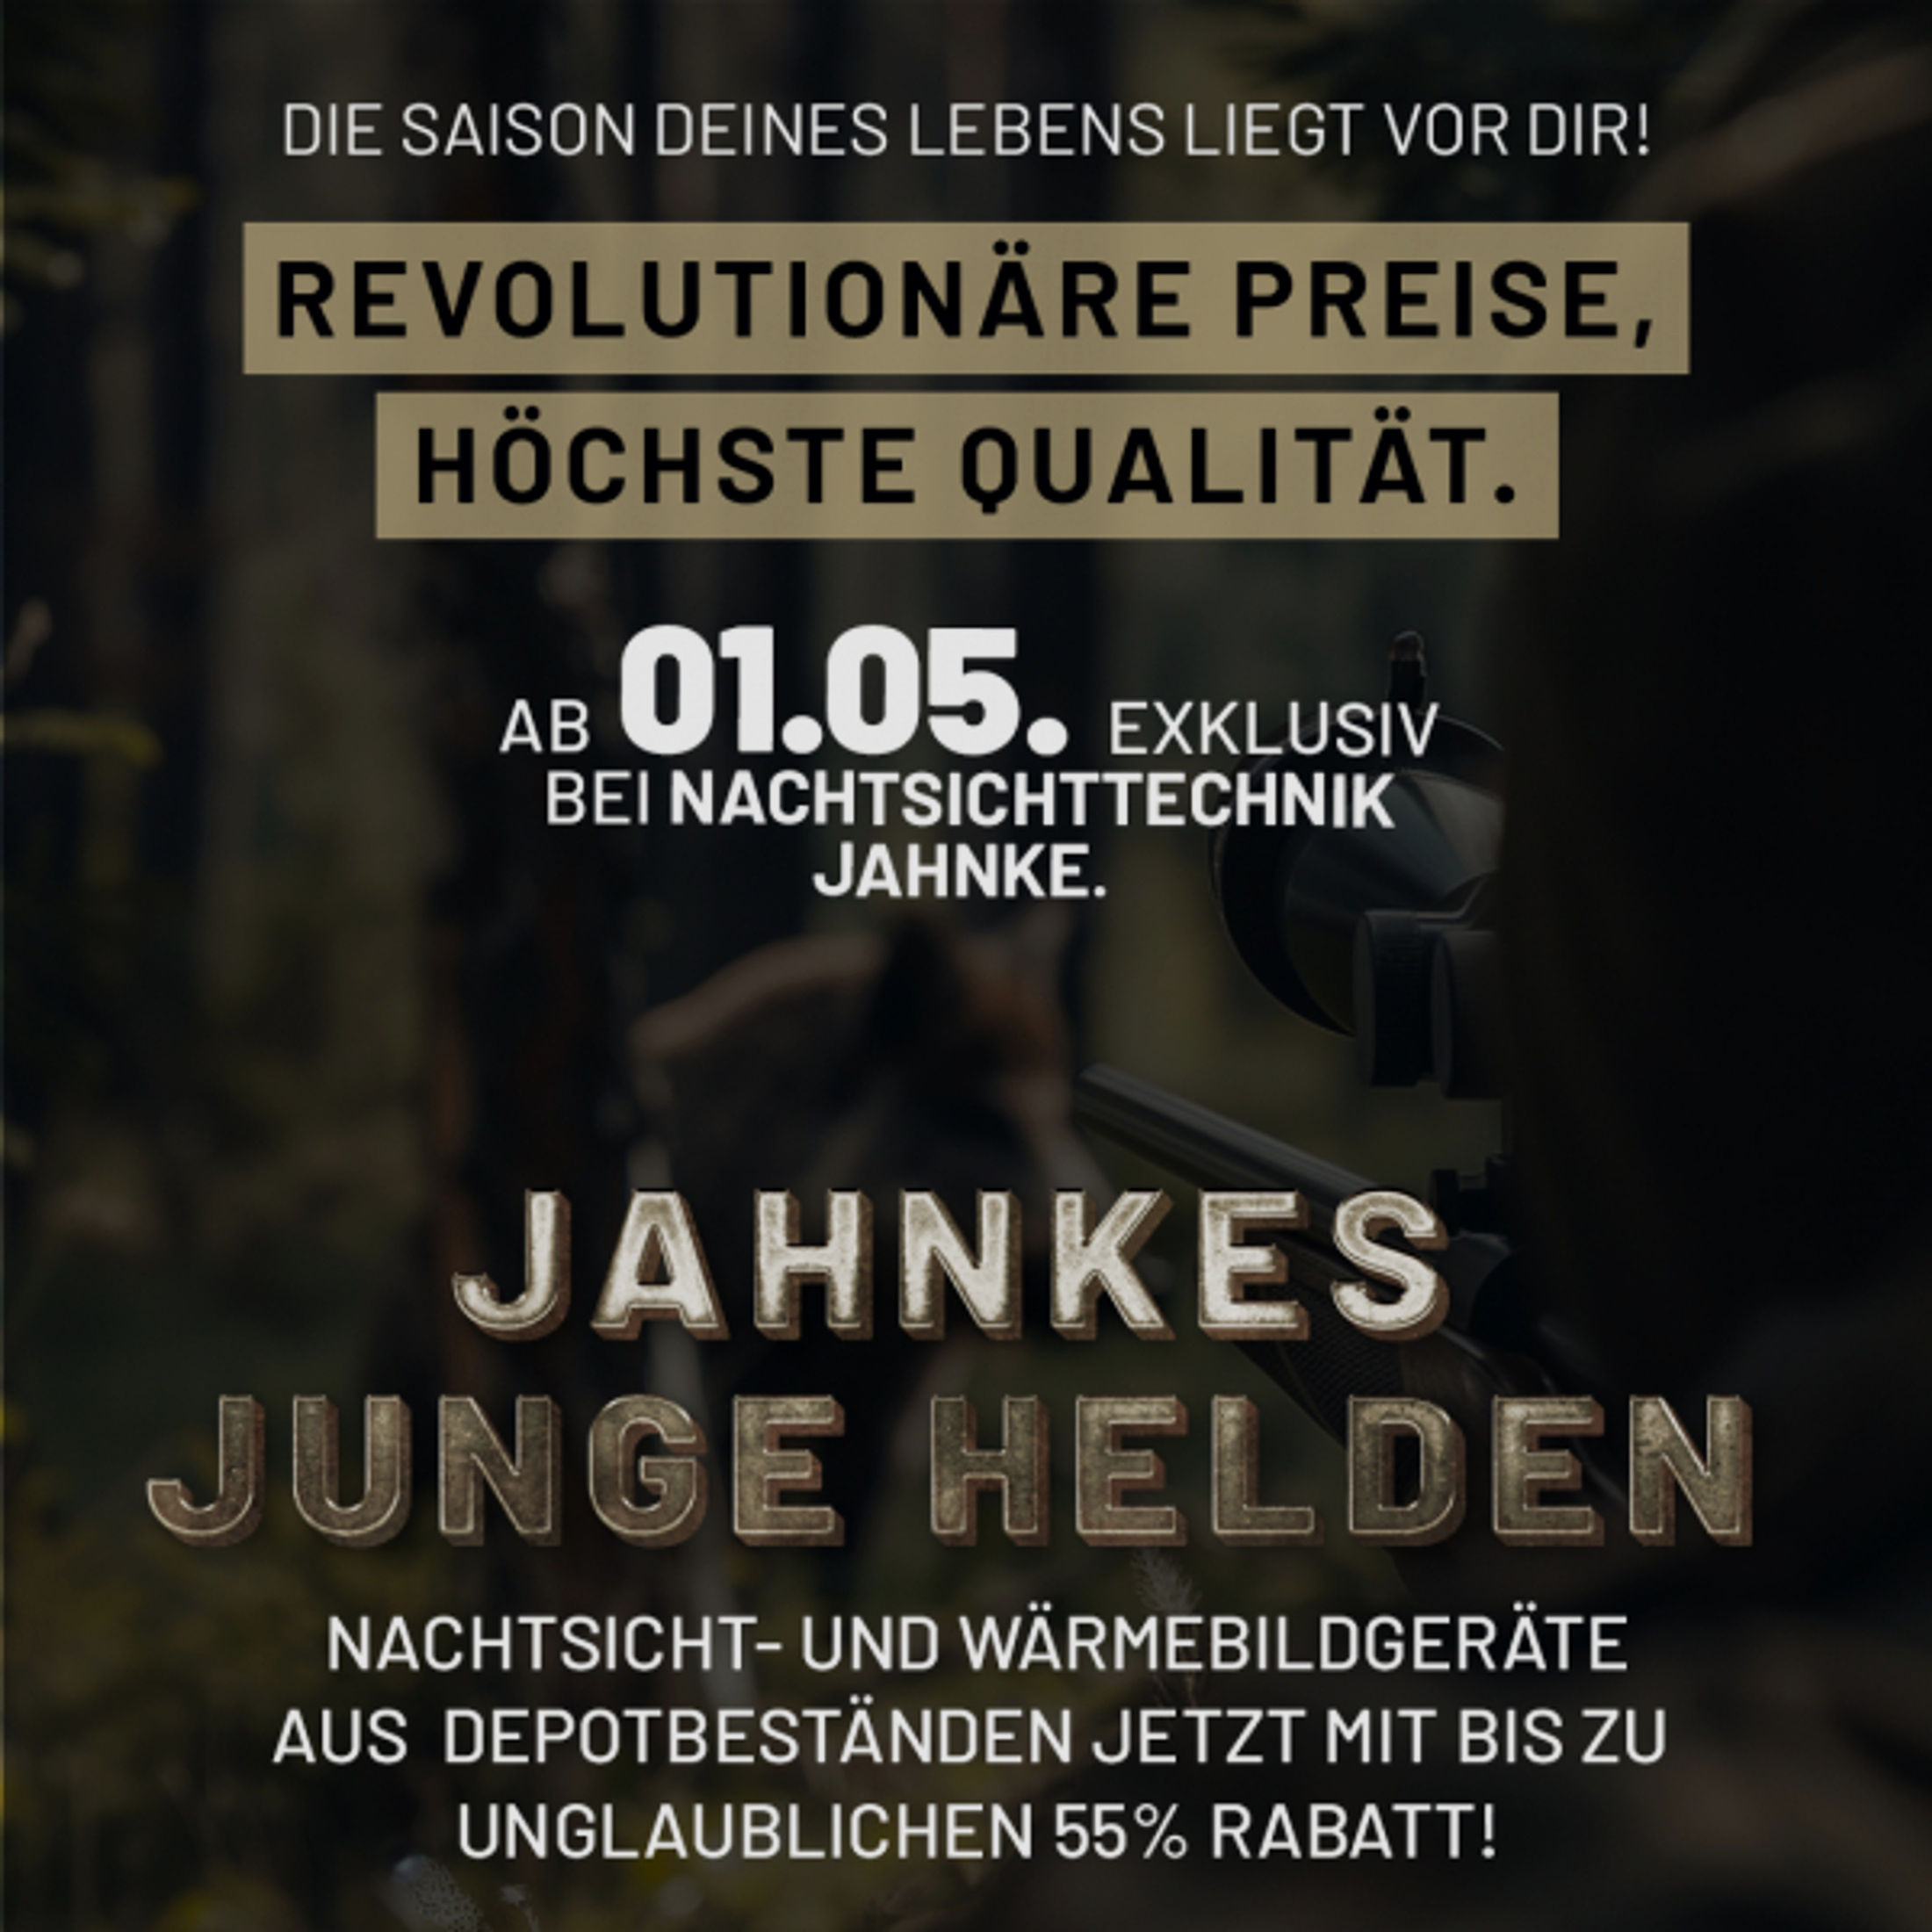 DJ-8 NSV 1×58 JJH aus der Jahnke Junge Helden" Aktion LK 1 S 2, Jahnke Premium